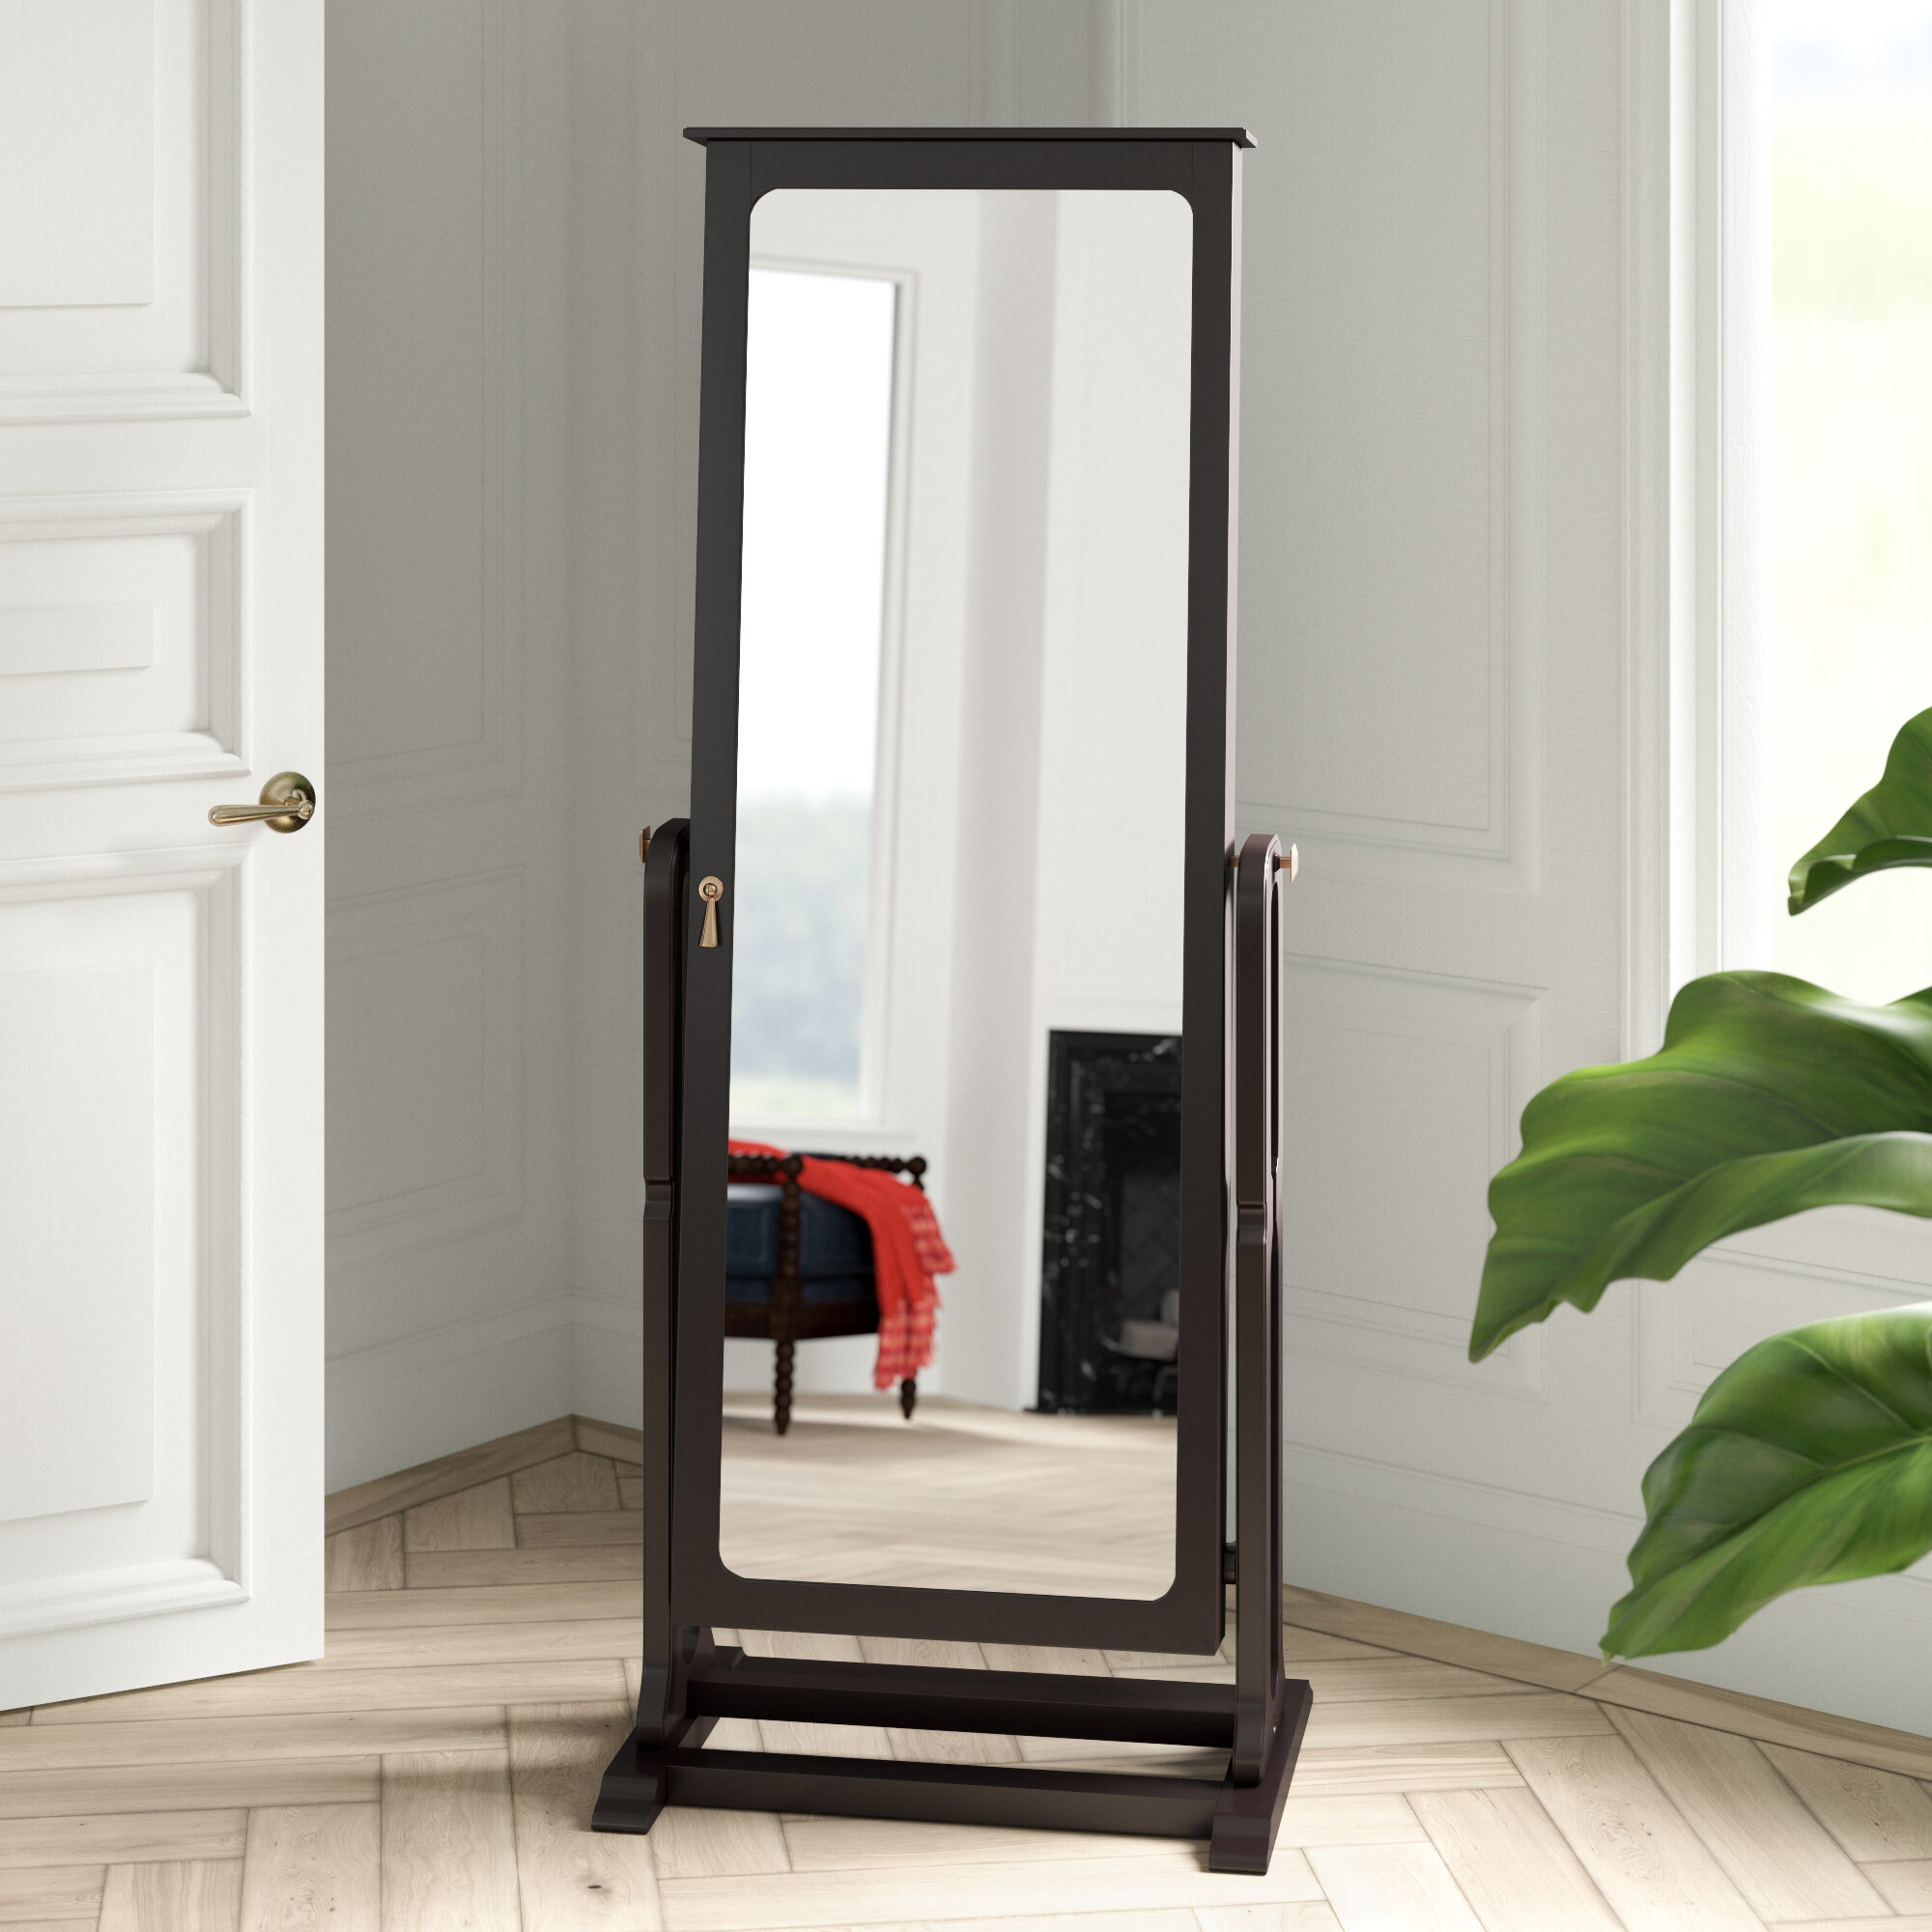 Mirror Free Standing Nishano Cheval Full Length Floor For Bedroom Home Dressing 